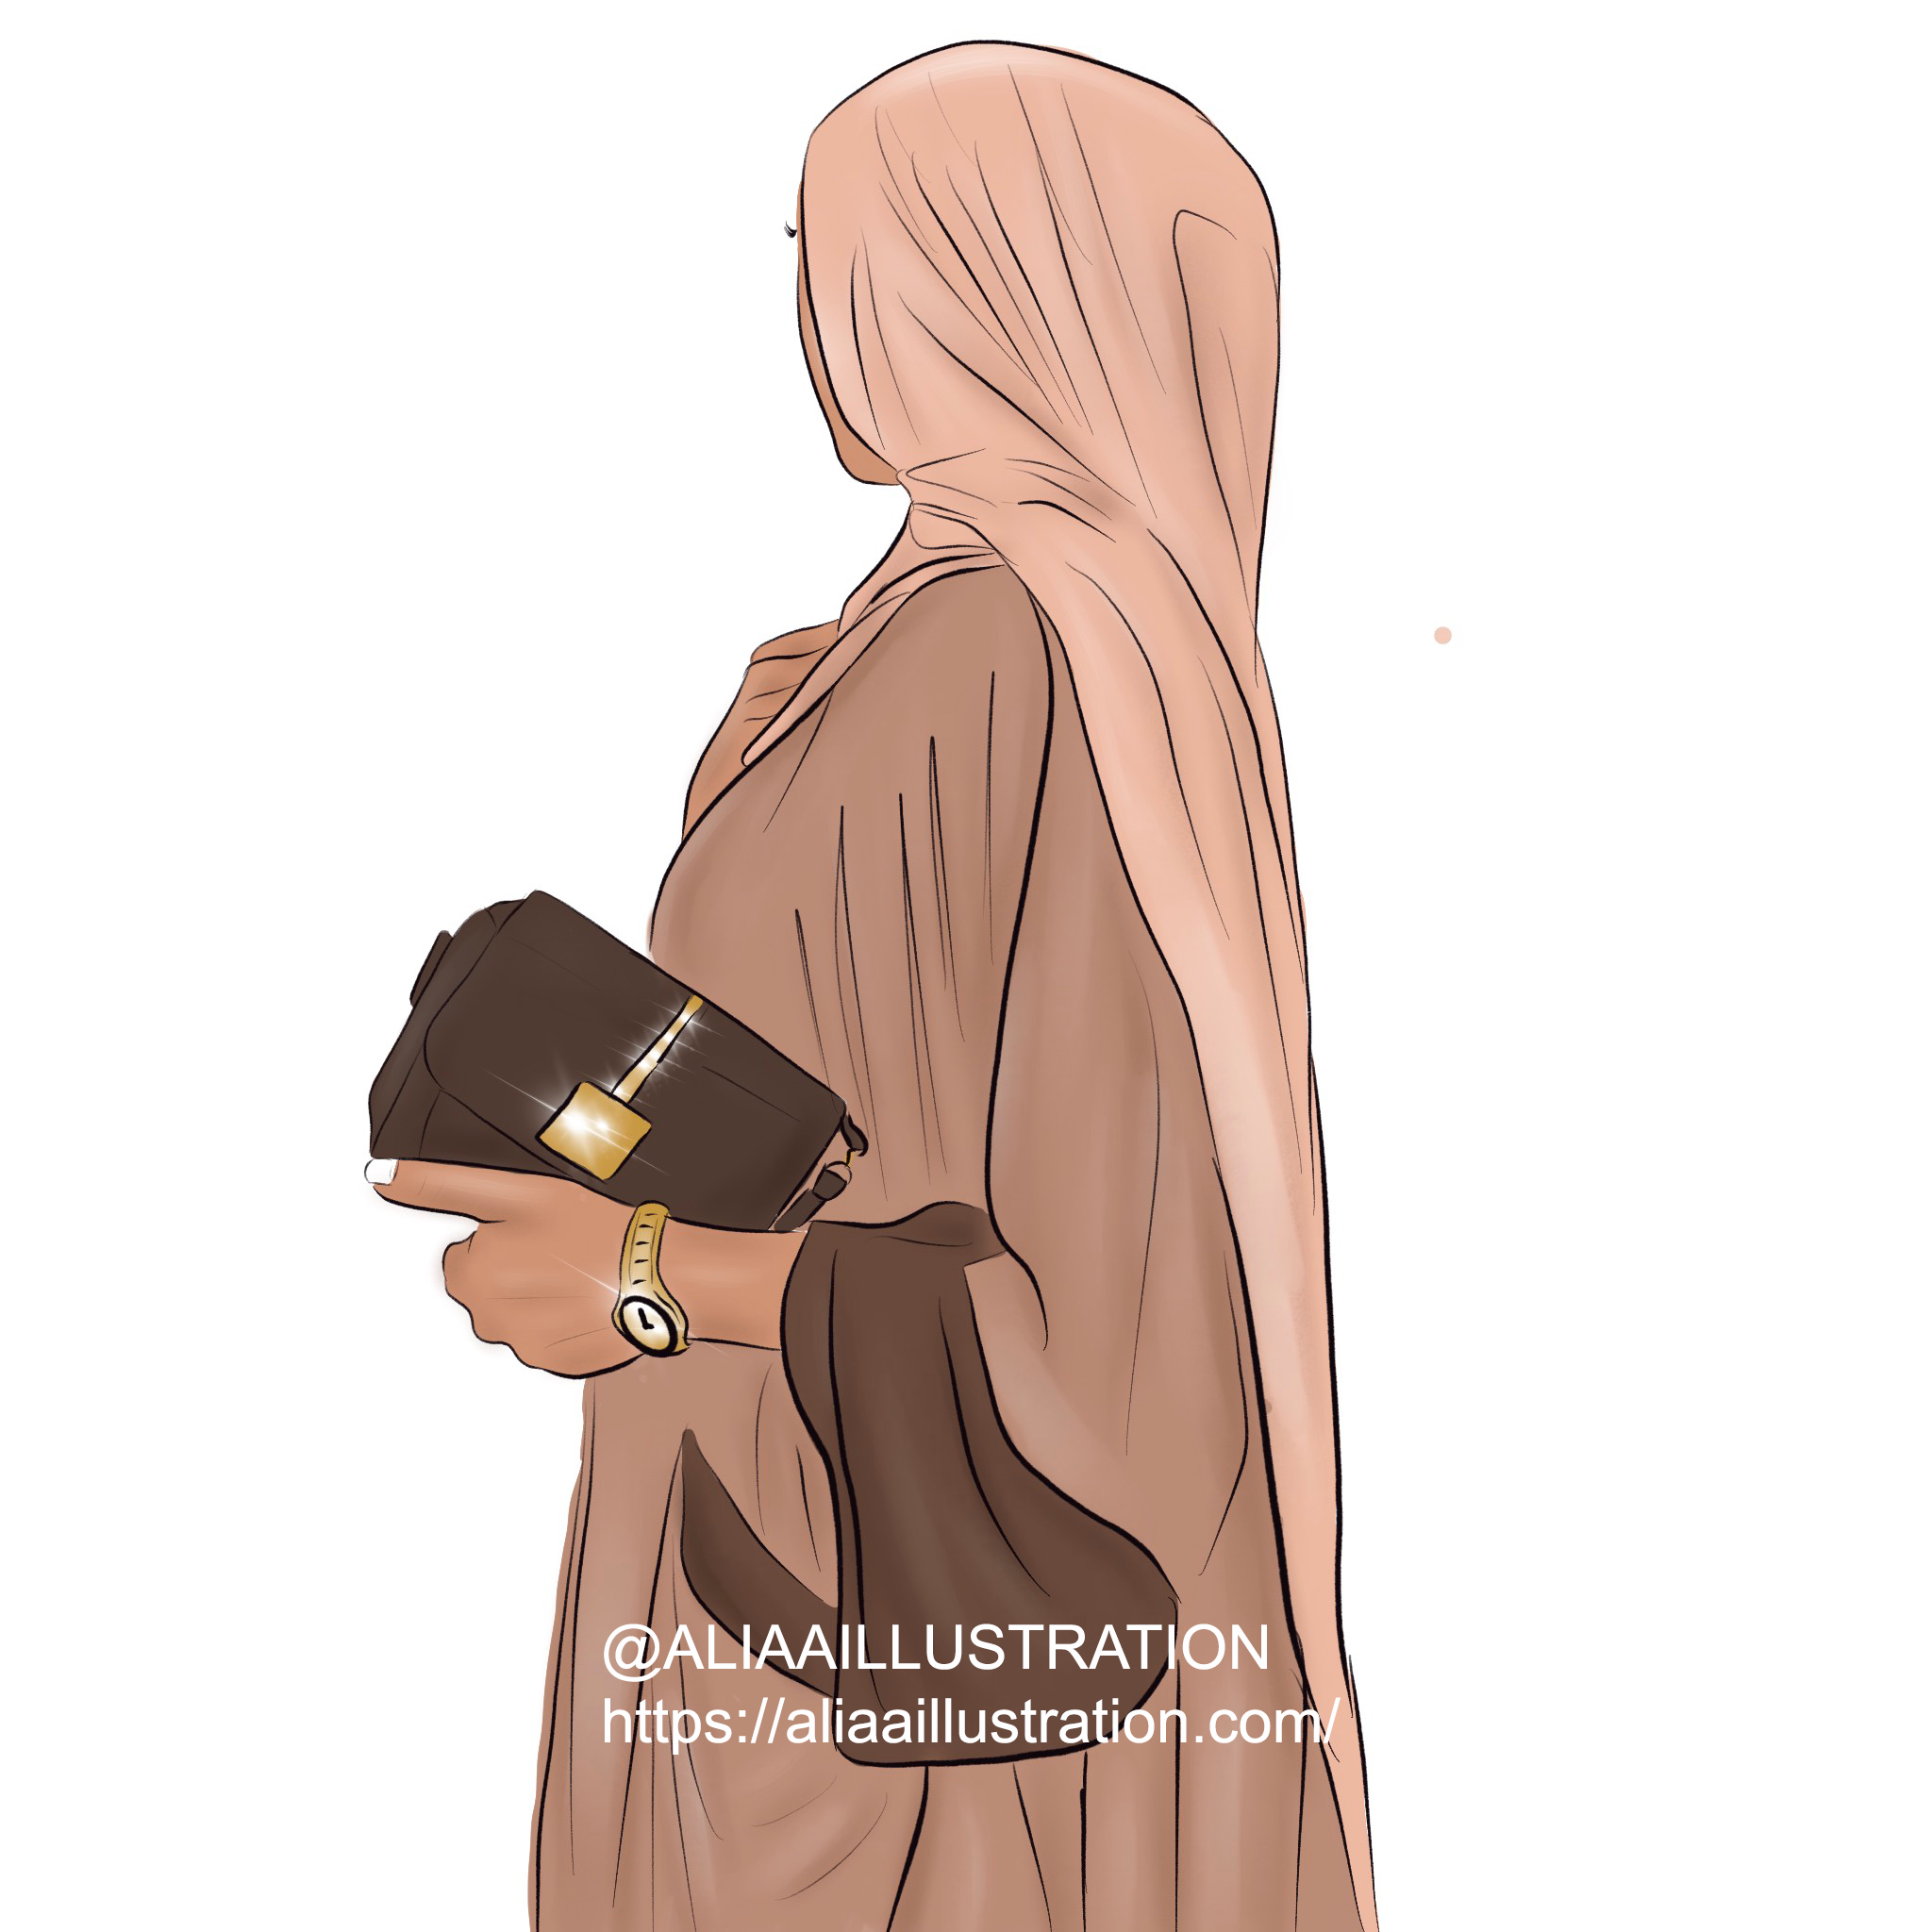 Travailler à domicile, métiers avec son voile, hijab